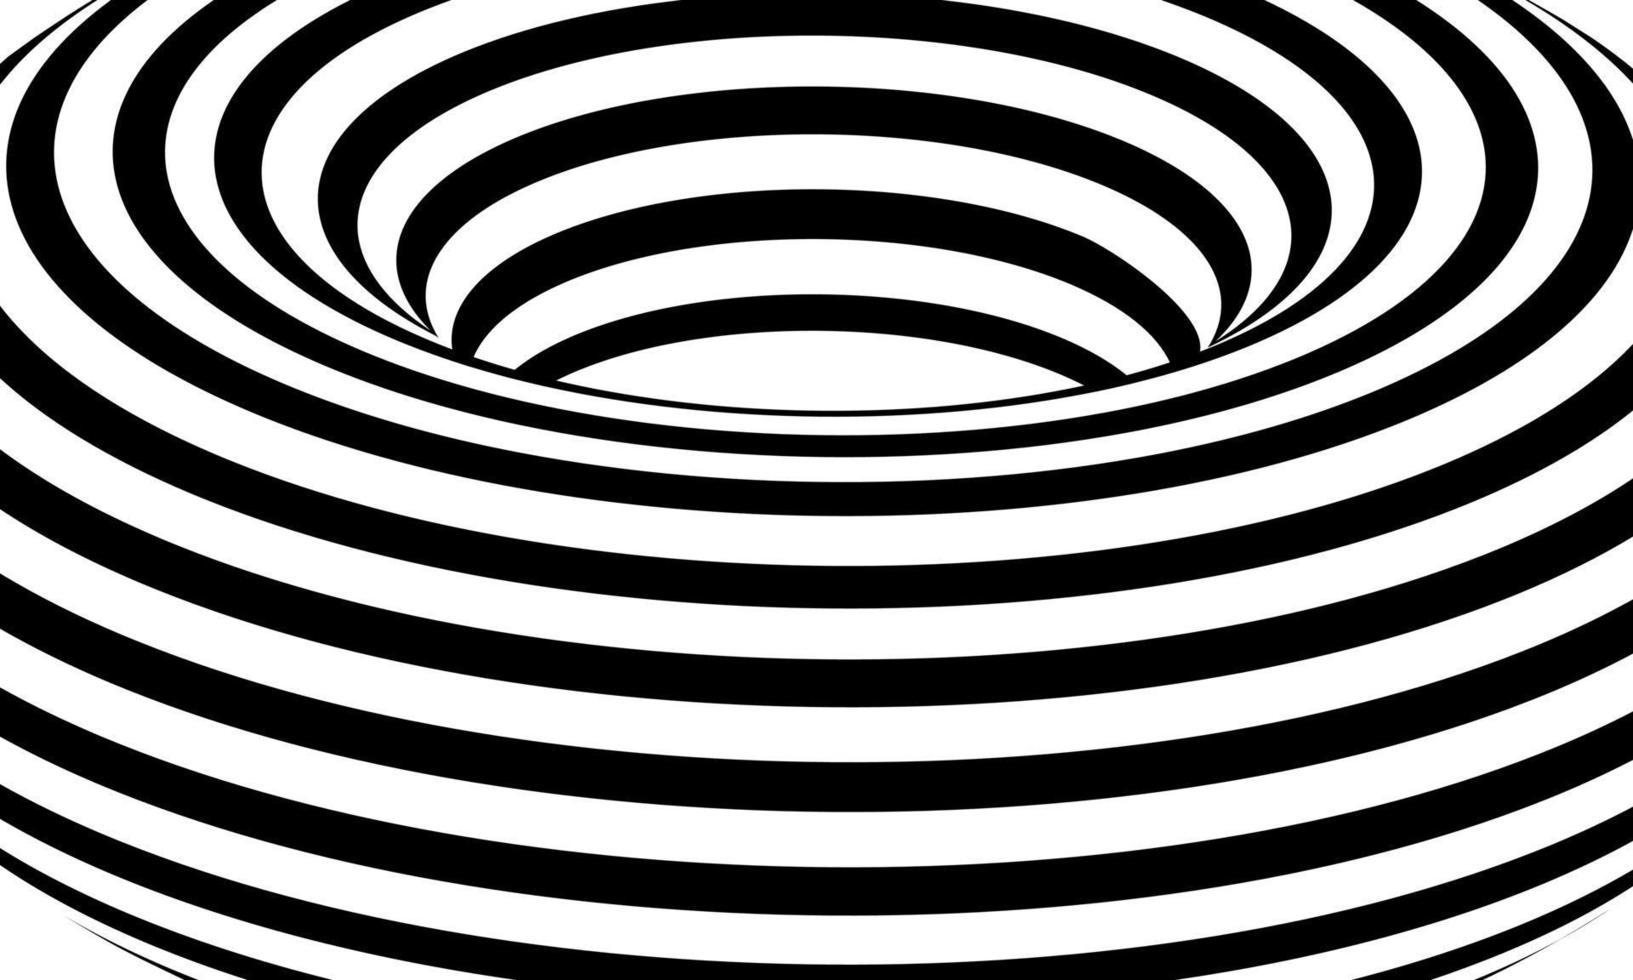 Stock Vektor Muster aus schwarzen und weißen Linien optische Täuschung Vektor Illustration Hintergrund